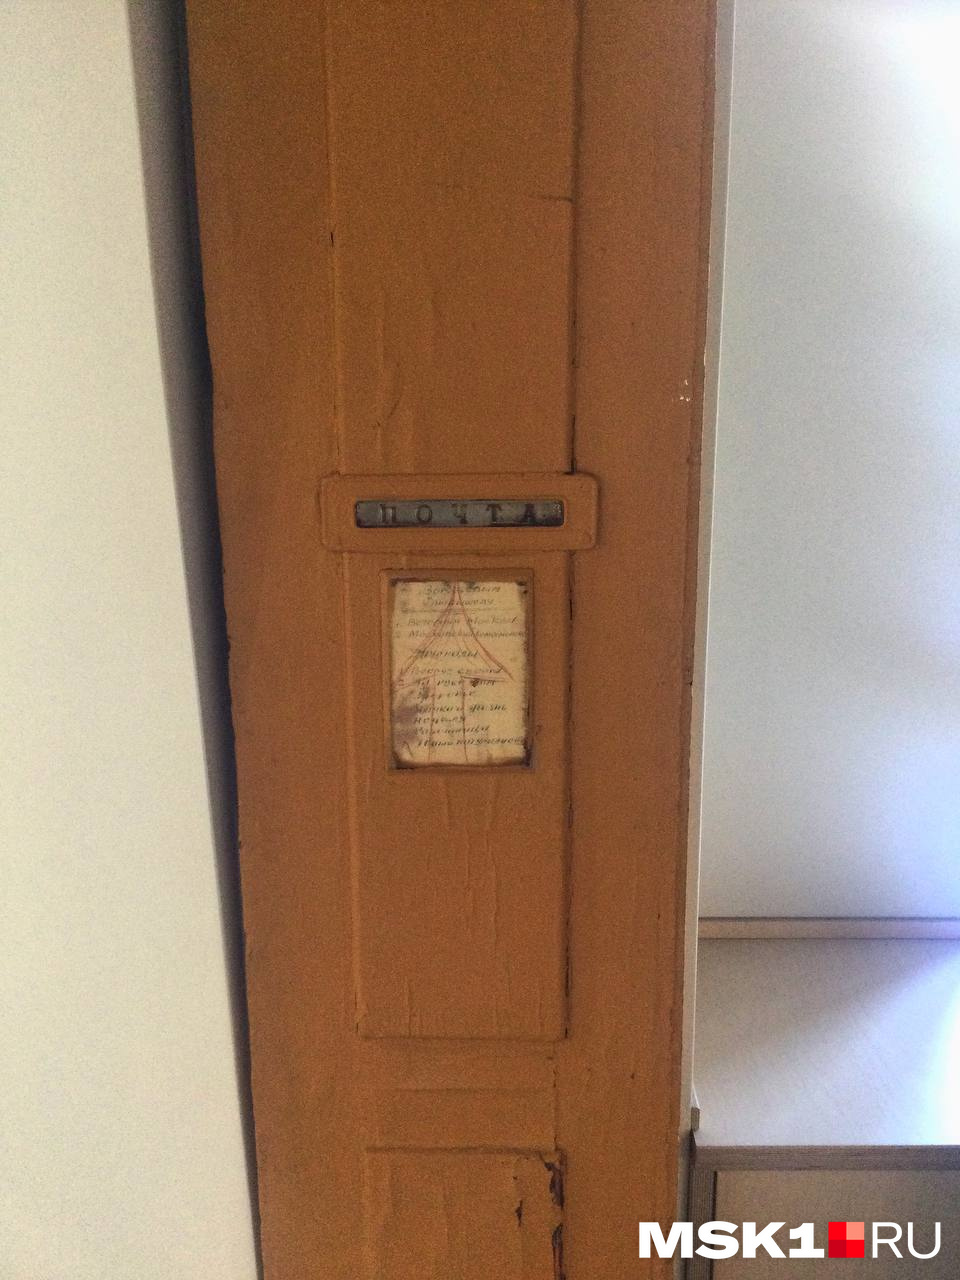 Еще одна спасенная дверь времен СССР на выставке "Скрытая Москва"